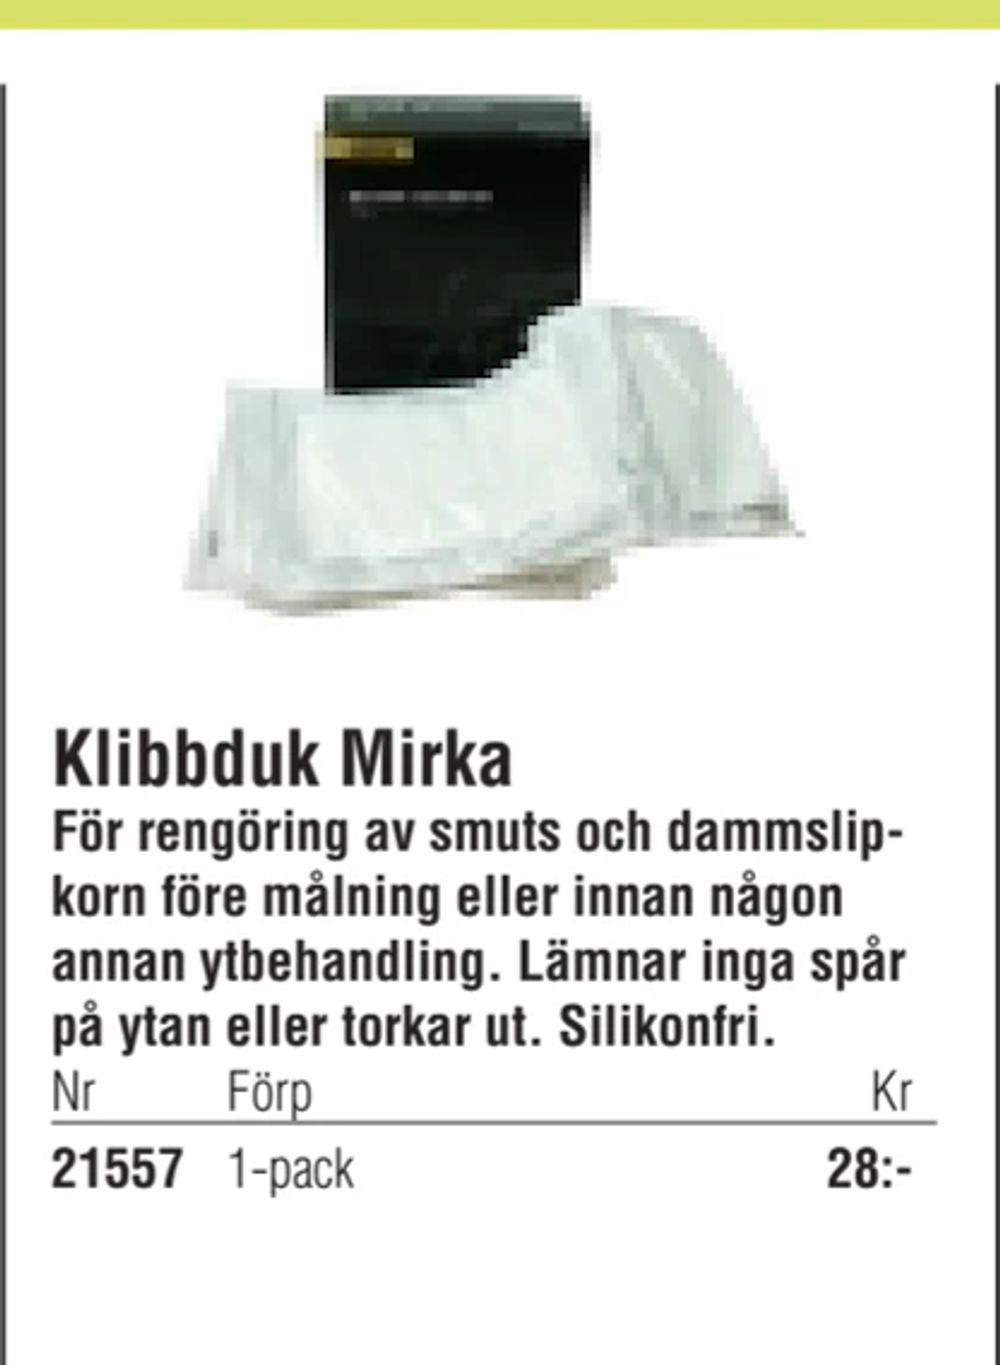 Erbjudanden på Klibbduk Mirka från Erlandsons Brygga för 28 kr